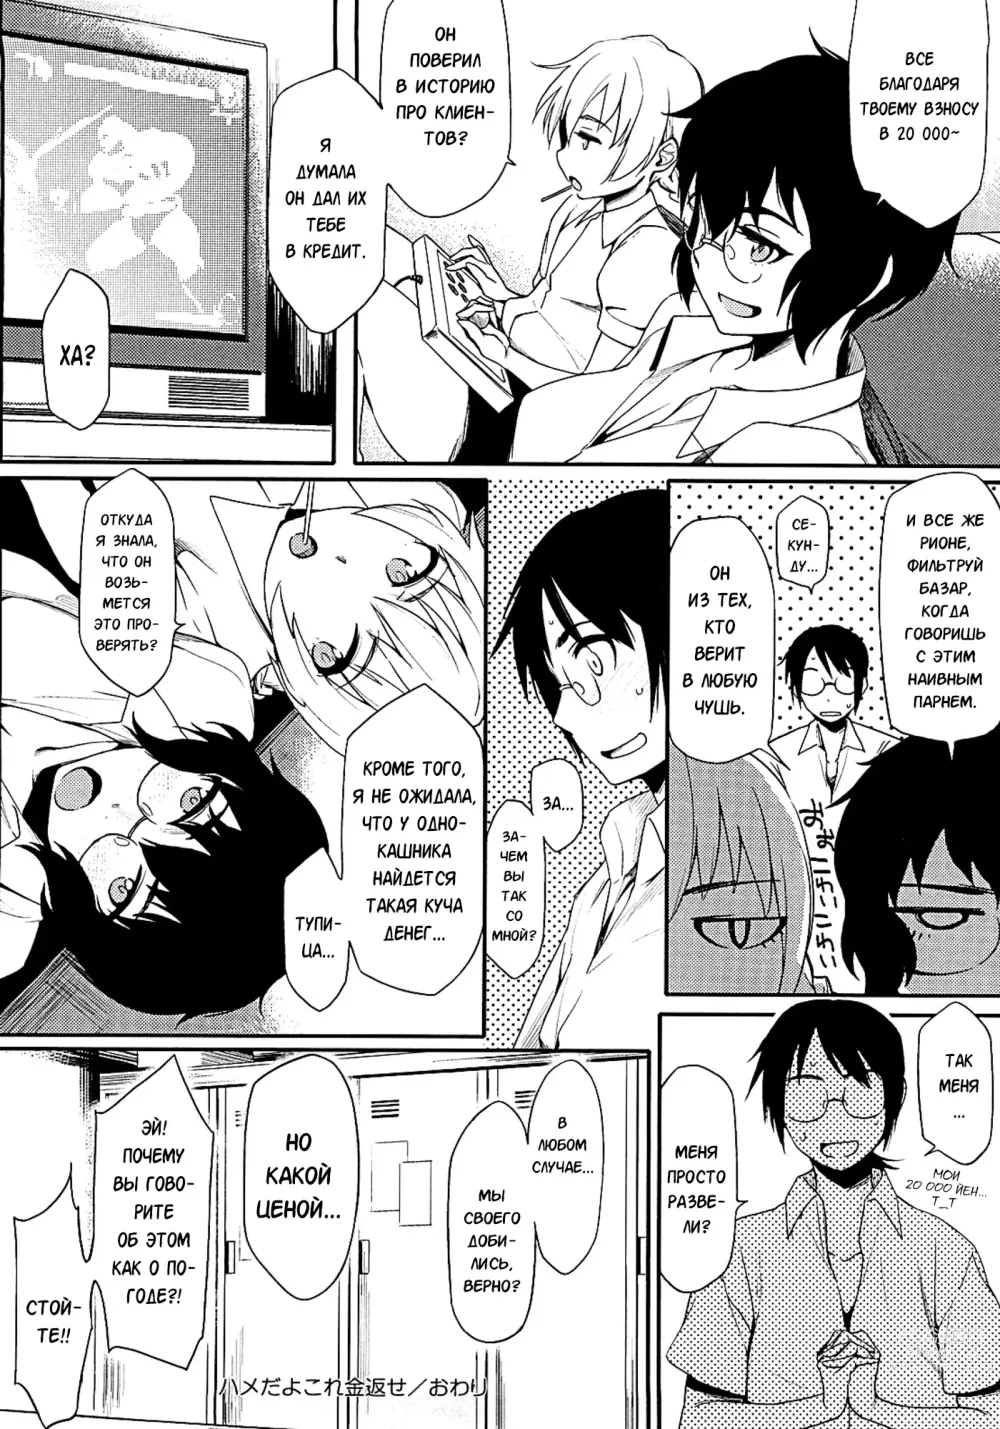 Page 192 of manga Клубничный дилдо после школы